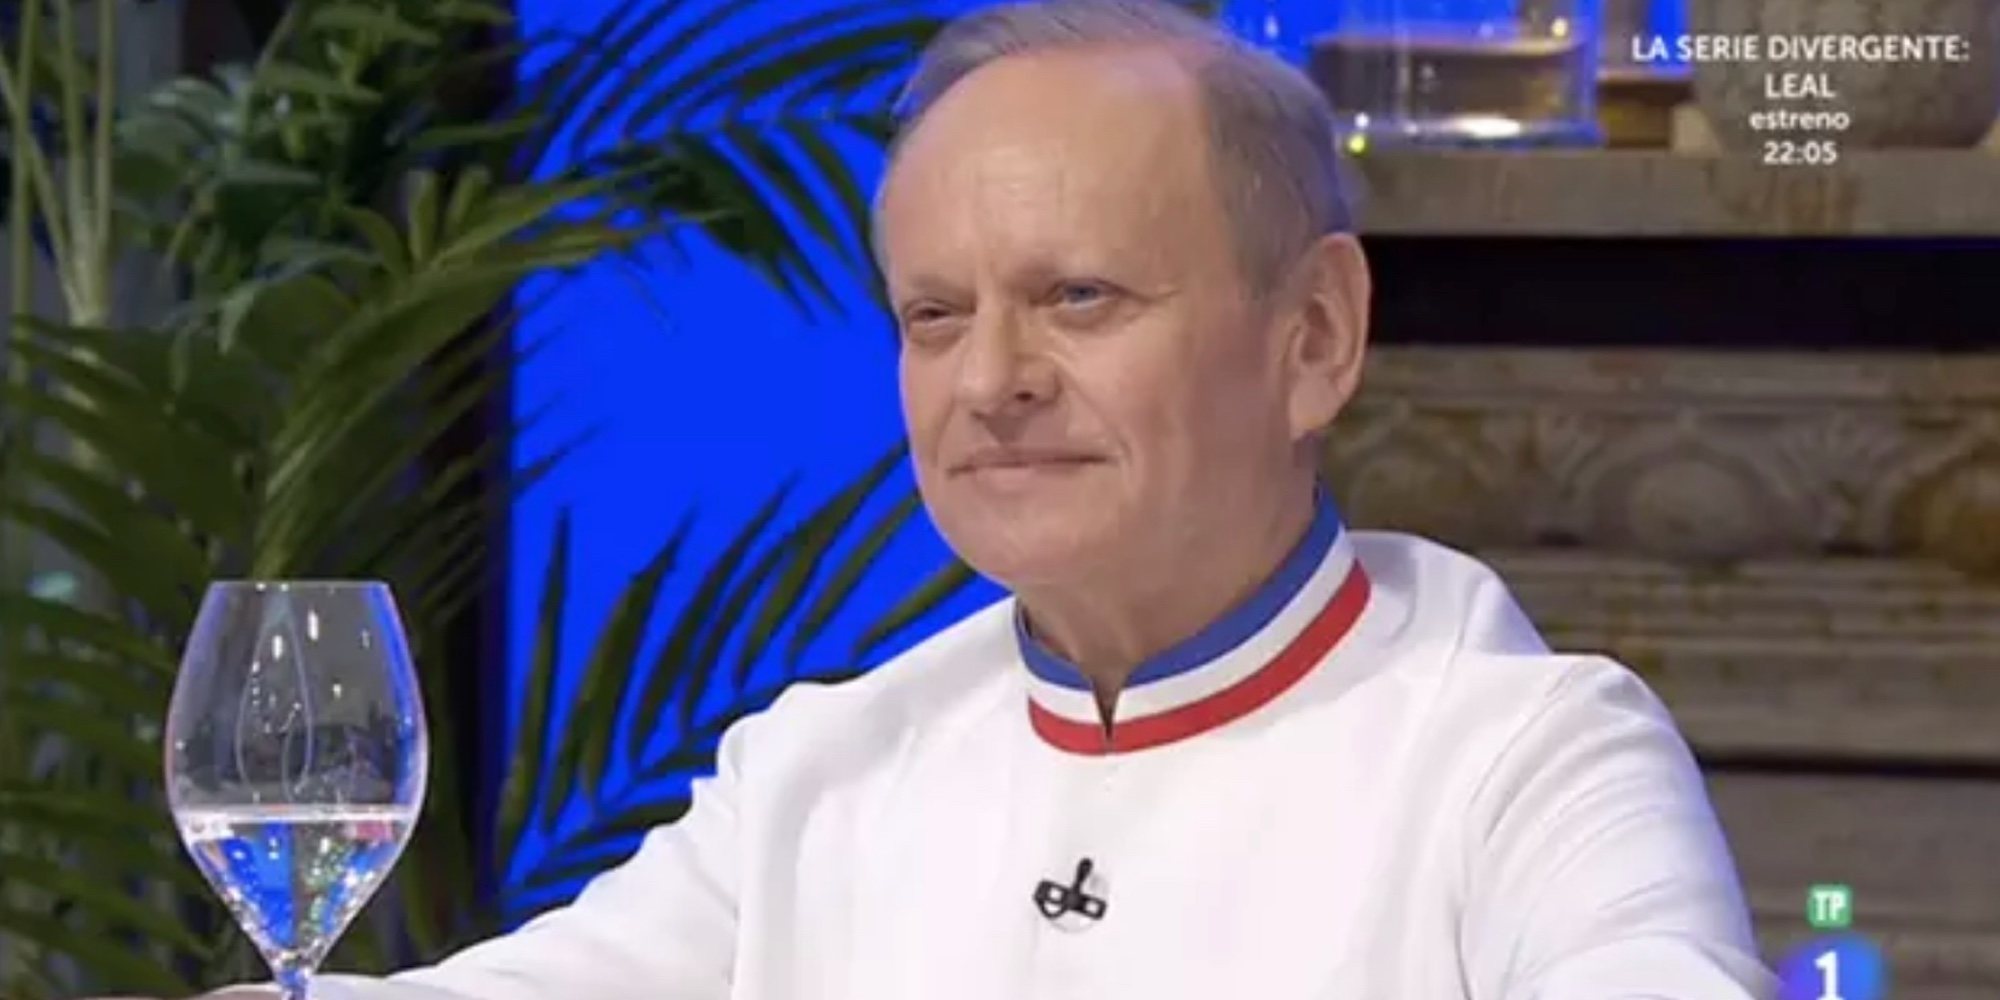 Muere el chef francés Robuchon a los 73 años después de conseguir 32 estrellas Michelín